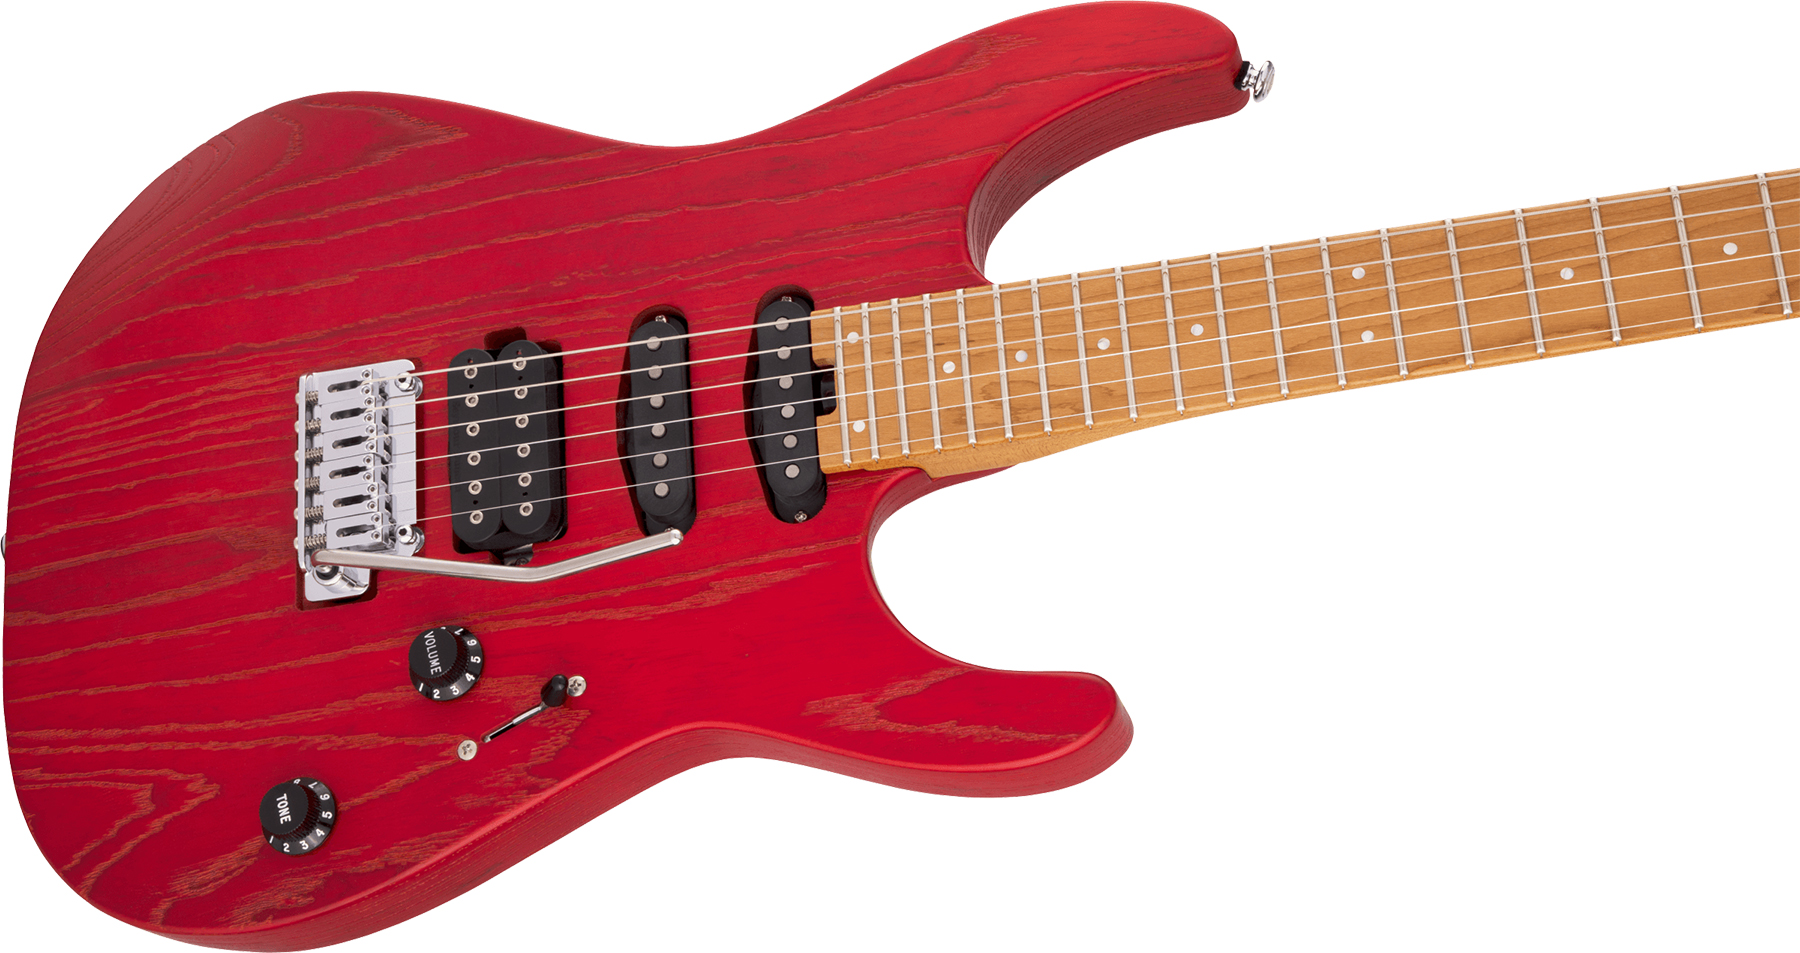 Charvel Dinky Dk24 Hss 2pt Cm Ash Pro-mod Seymour Duncan Trem Mn - Red Ash - Elektrische gitaar in Str-vorm - Variation 2